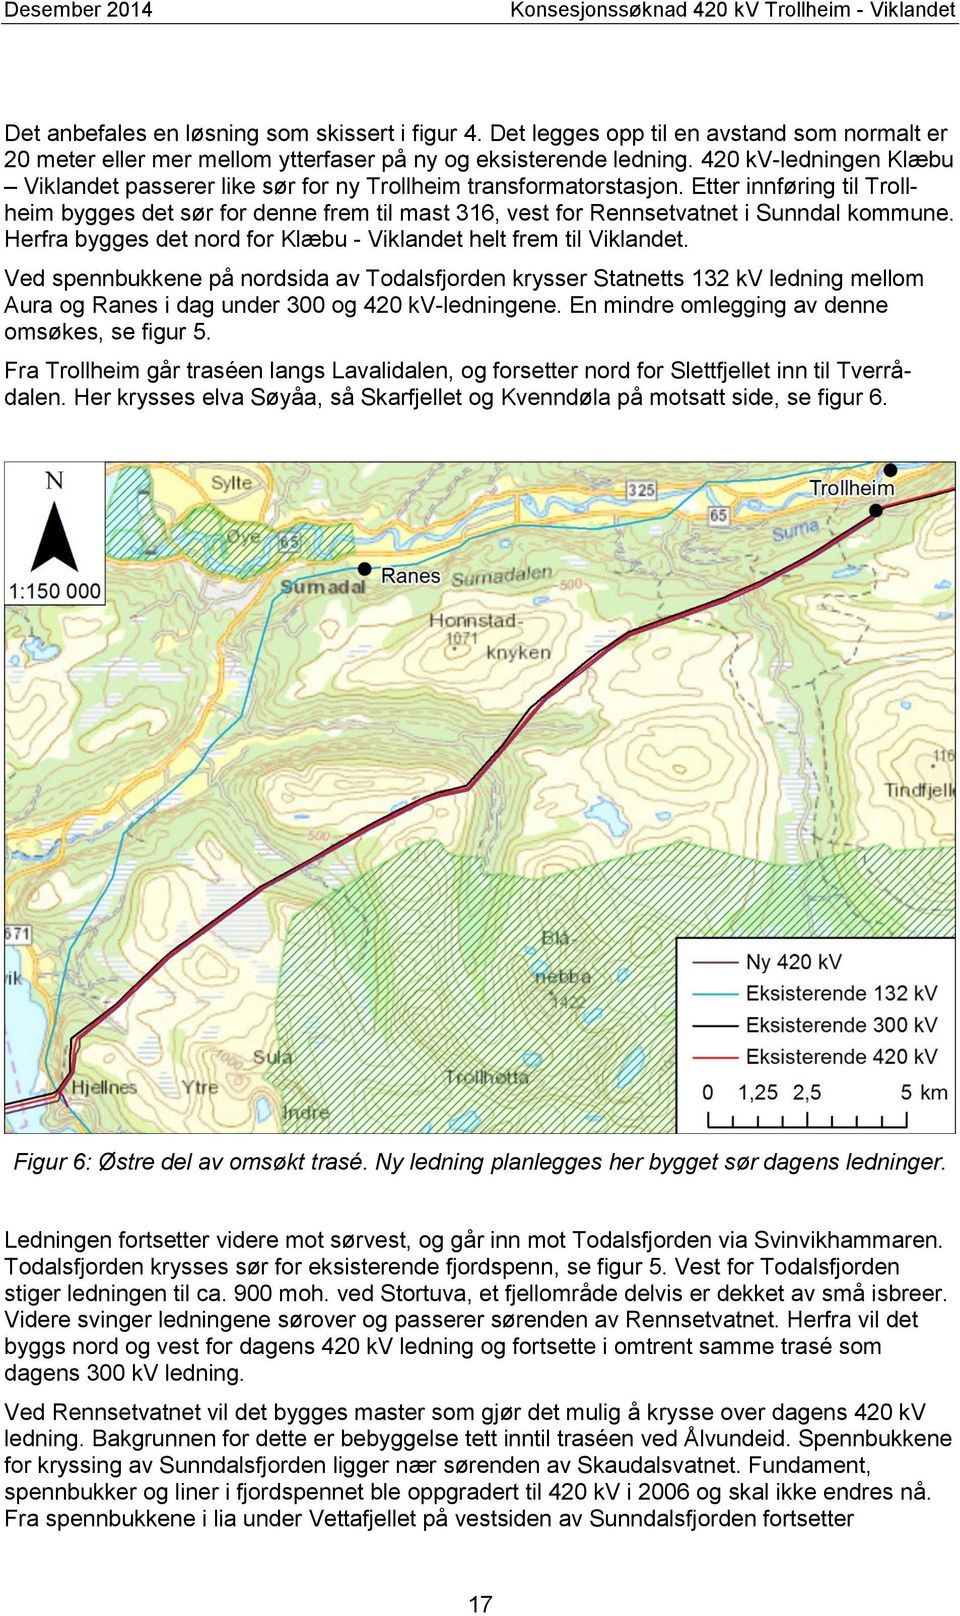 420 kv-ledningen Klæbu Viklandet passerer like sør for ny Trollheim transformatorstasjon.